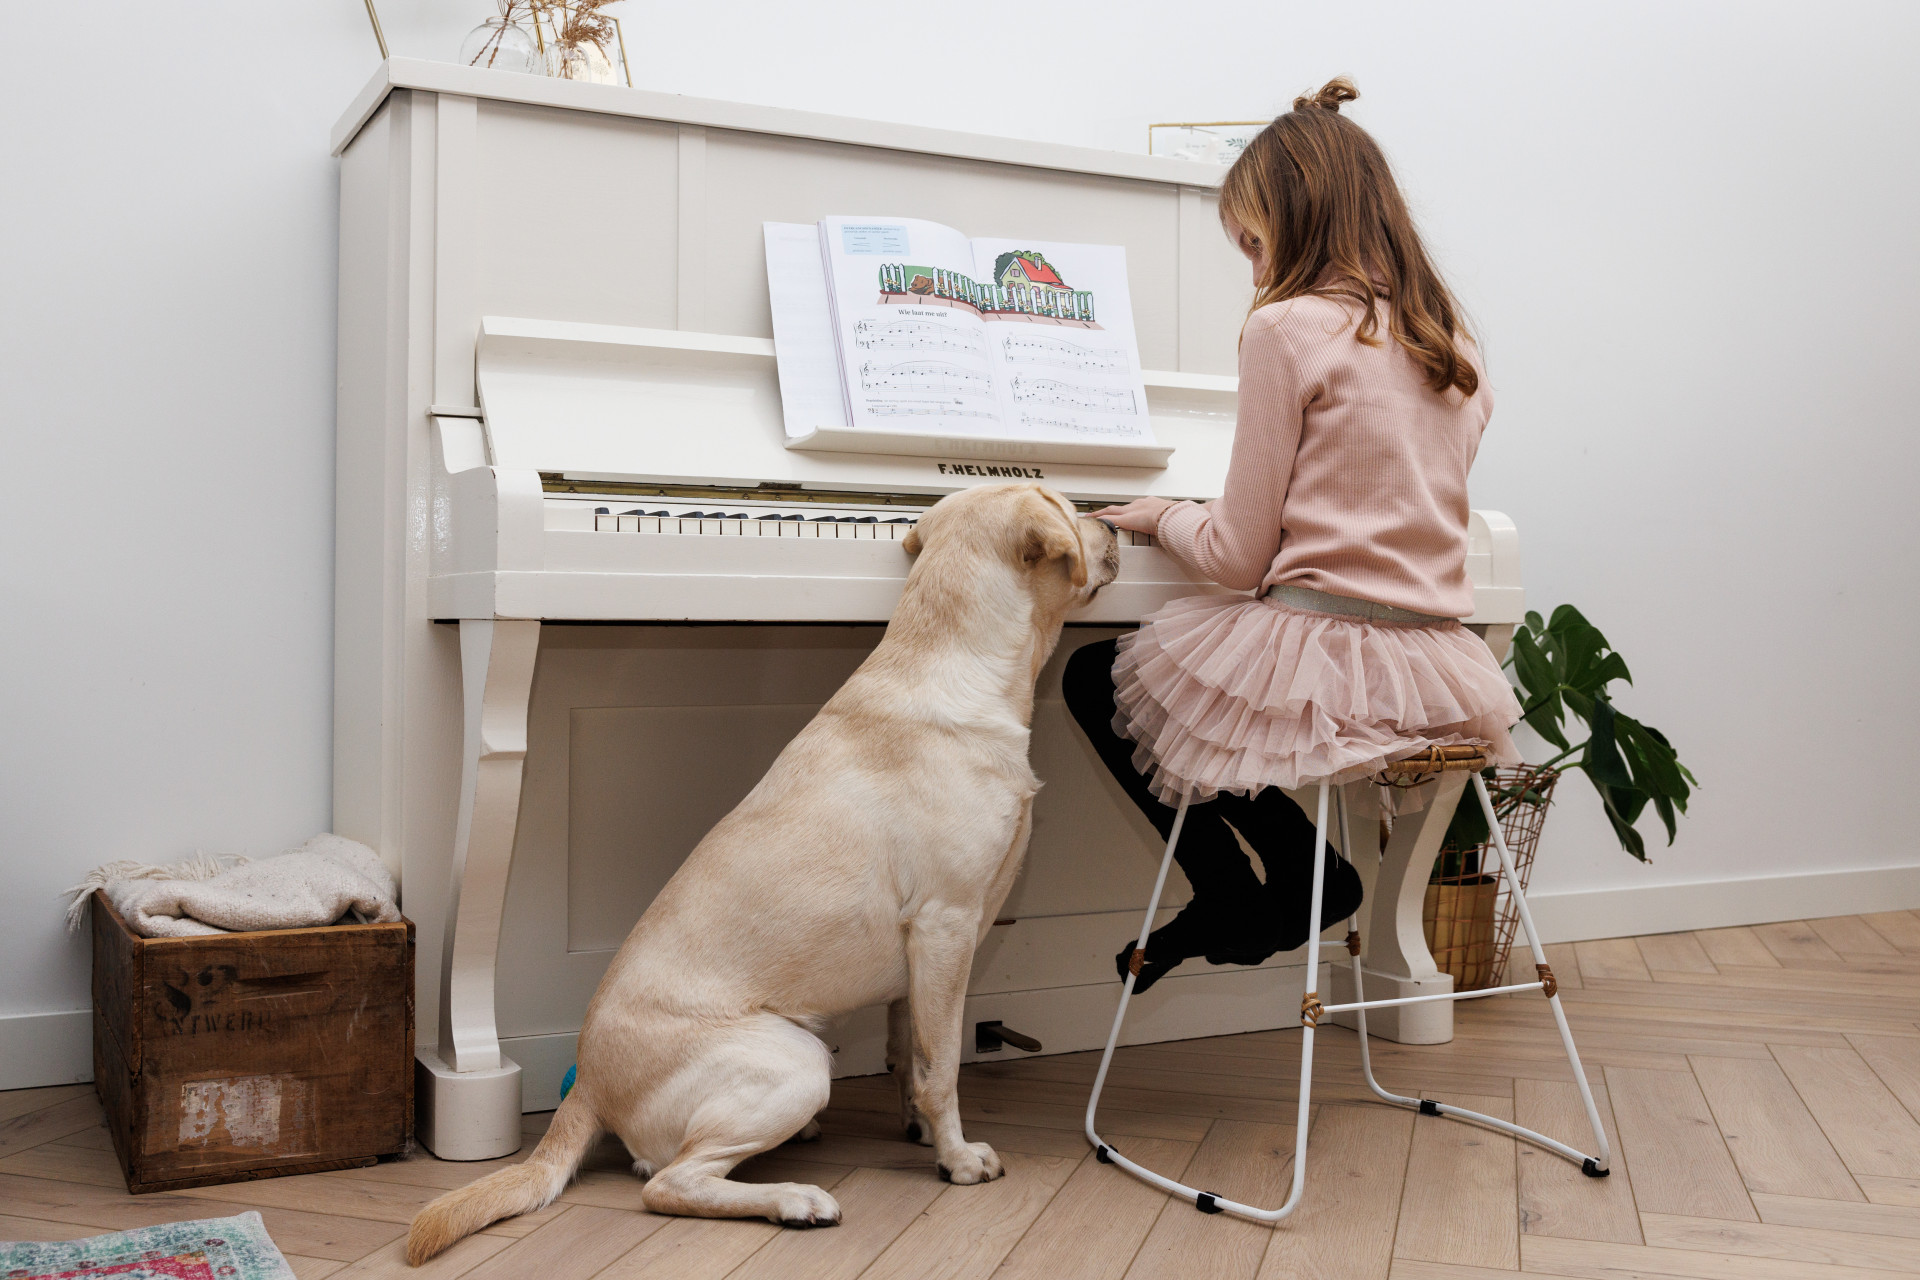 Isa achter de piano met buddyhond Ona naast haar